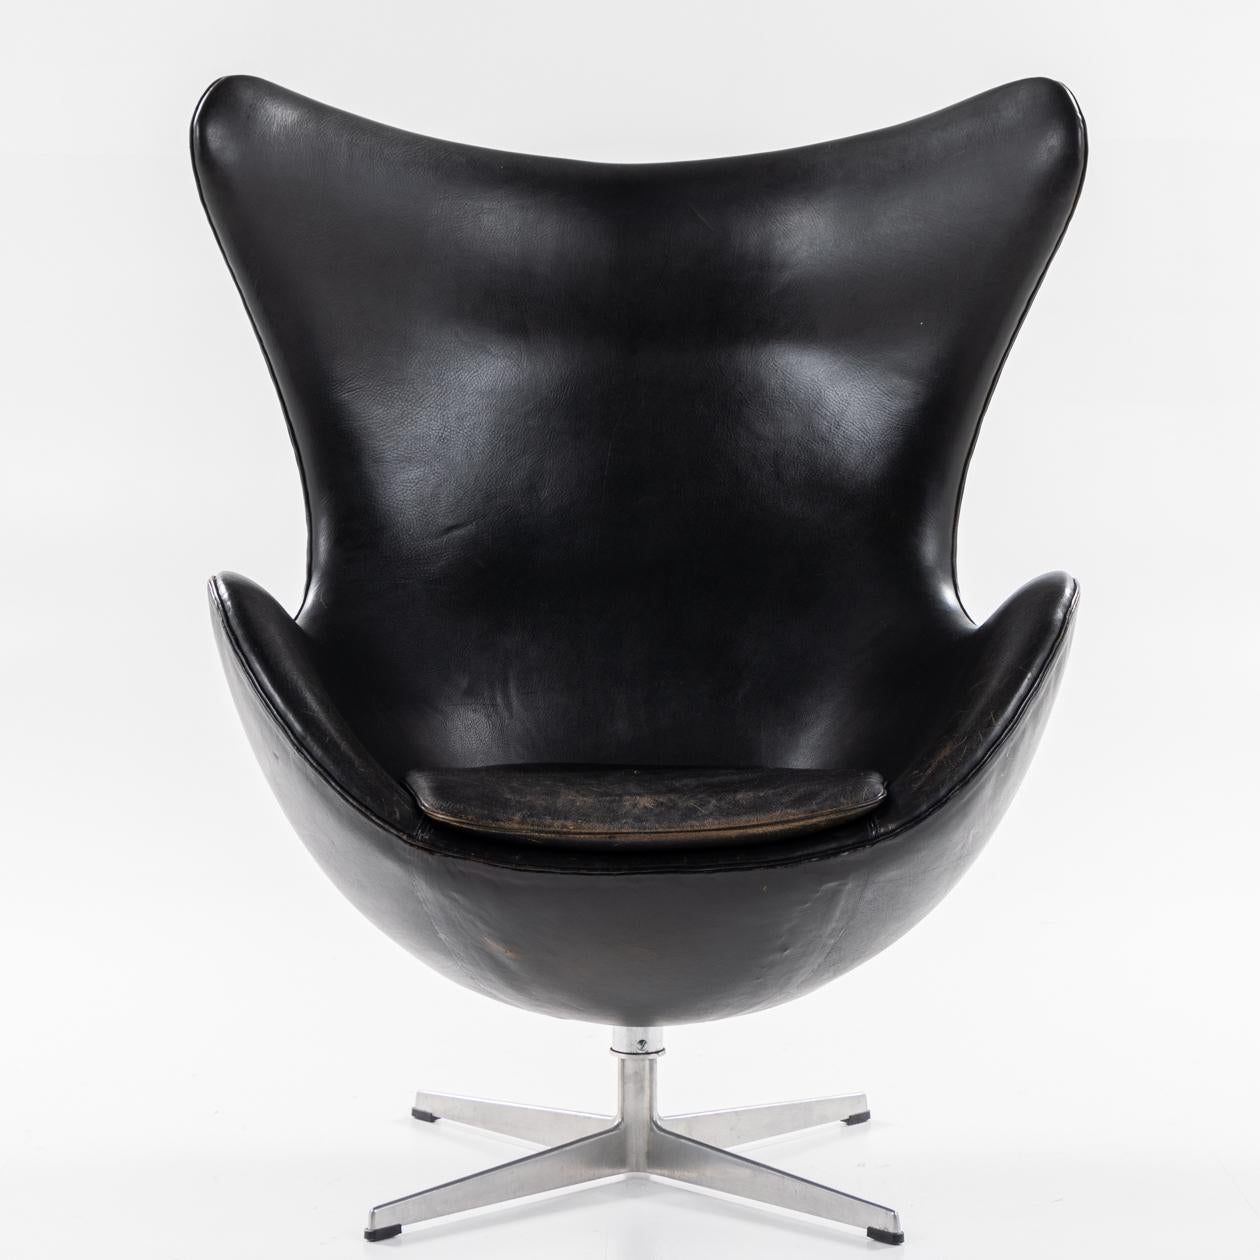 AJ 3316 - Chaise longue 'The Egg' en cuir noir d'origine, avec fonction de basculement, sur une ancienne base en aluminium, avec pouf assorti. Arne Jacobsen / Fritz Hansen